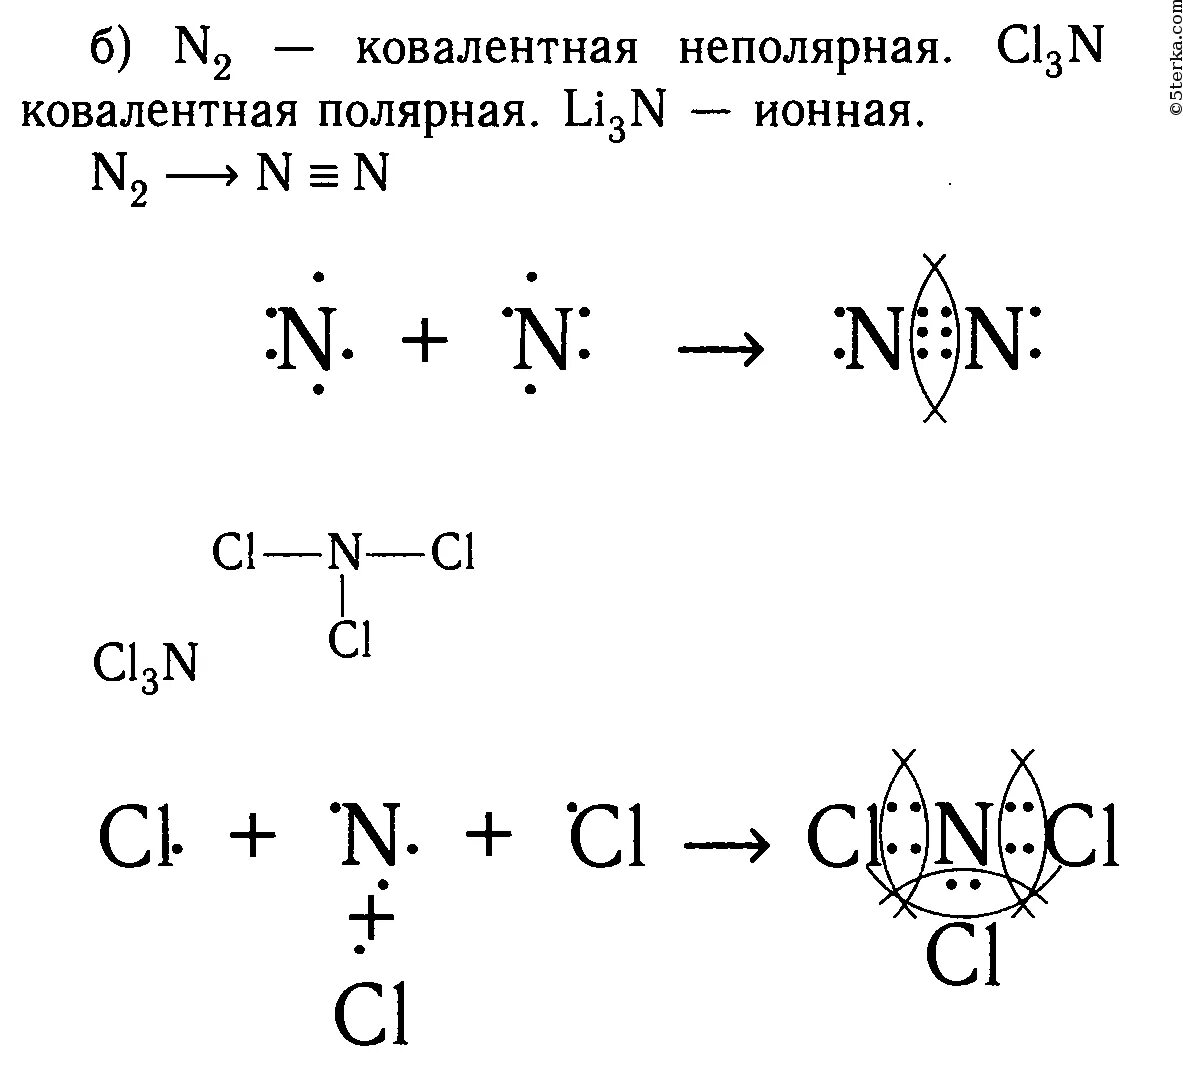 Ковалентные полярные неполярные ионная водородная металлическая. Схема образования химической связи. Cl3n схема образования химической связи. Схема образования n2 ионная связь. Определите Тип химической связи n2o.